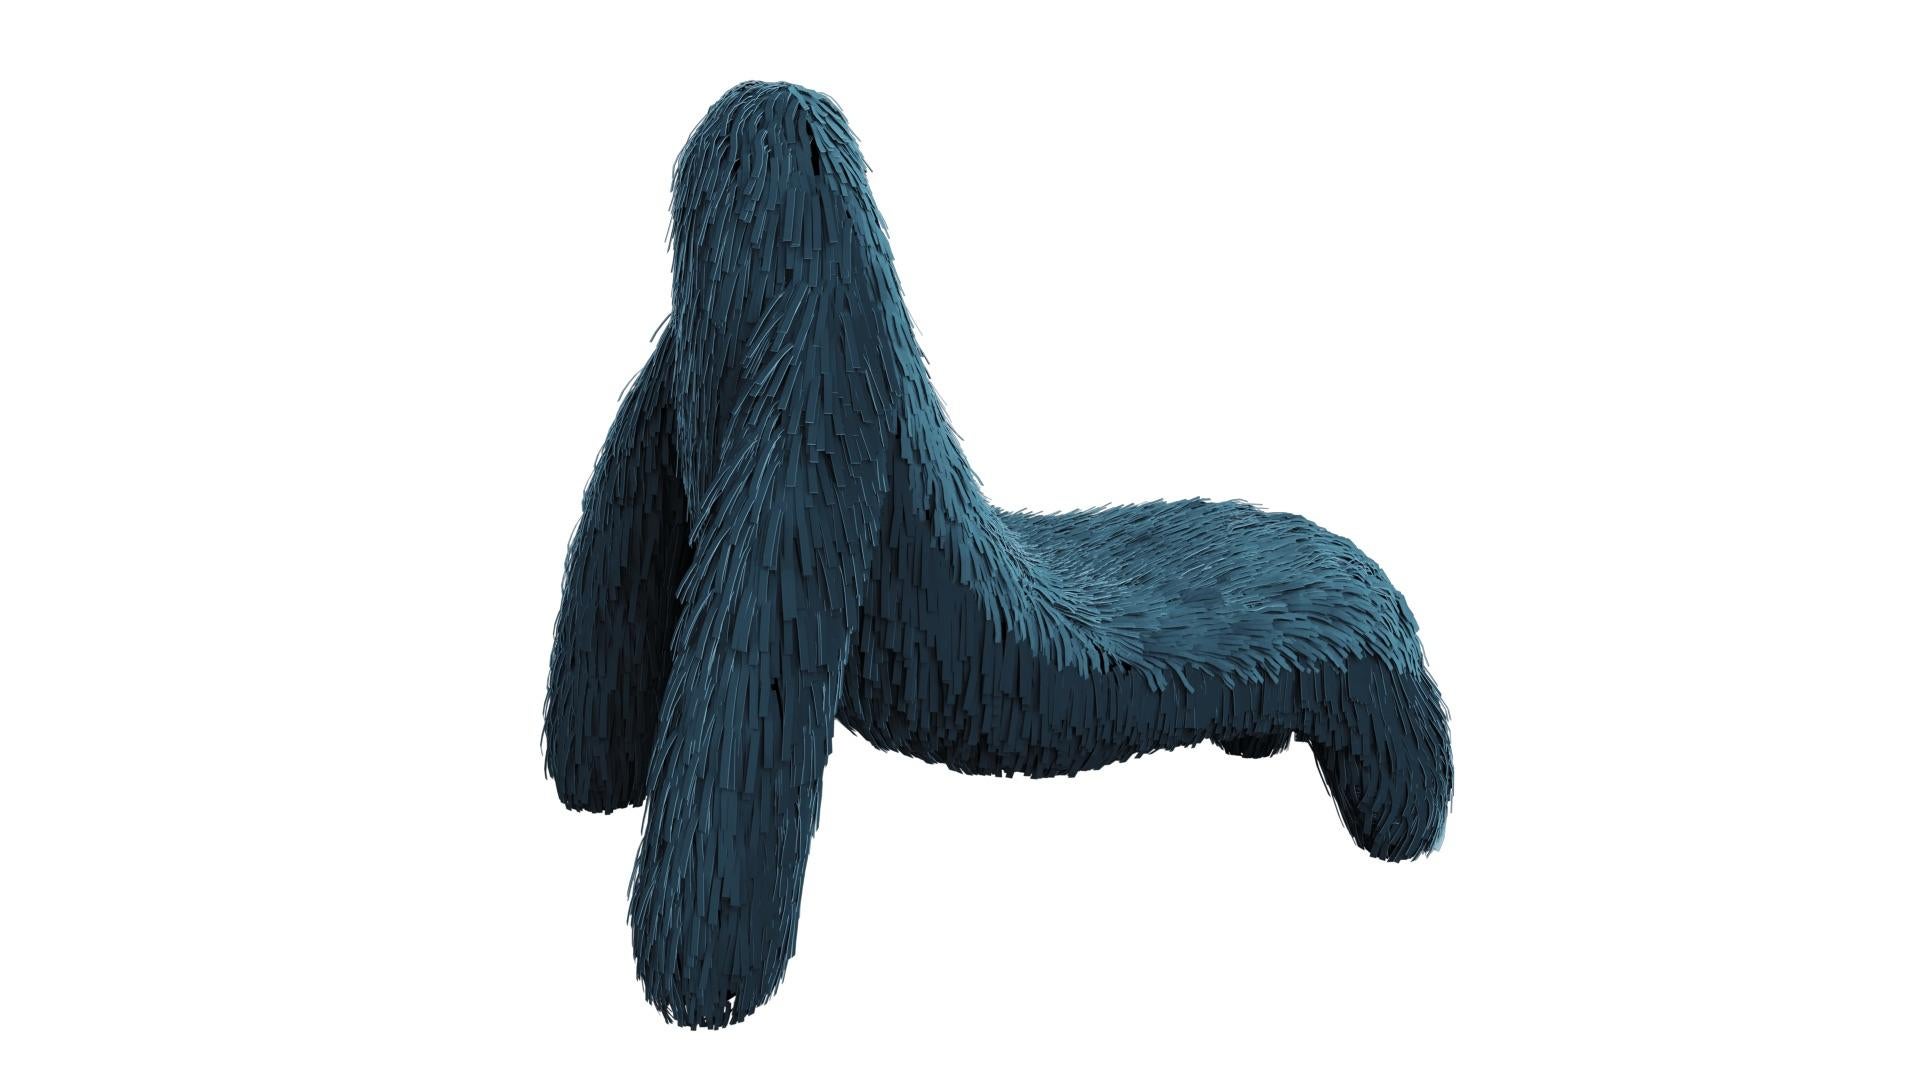 Der Gorilla-Stuhl mit echtem blau-grünem Leder von Marcantonio ist ein affenförmiger Sitz mit einem satten blau-grünen Lederbezug. Ein Loungesessel mit einer fantastischen, einzigartigen Form

Für seine ersten Kreationen stellte Marcantonio